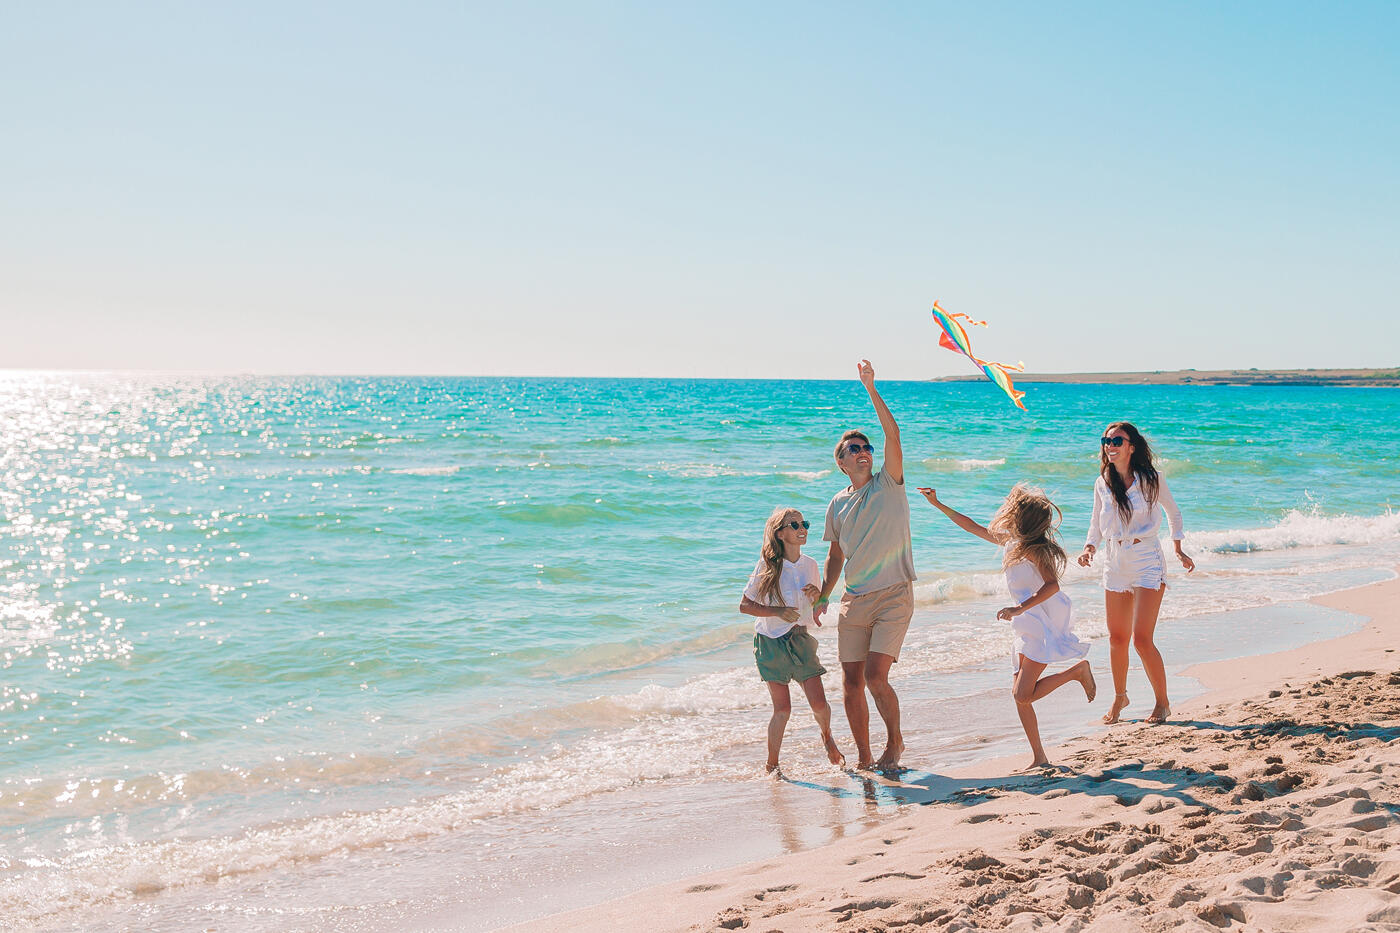 Famille jouant avec un cerf-volant sur une plage ensoleillée, avec la mer turquoise en arrière-plan, pendant leurs vacances.